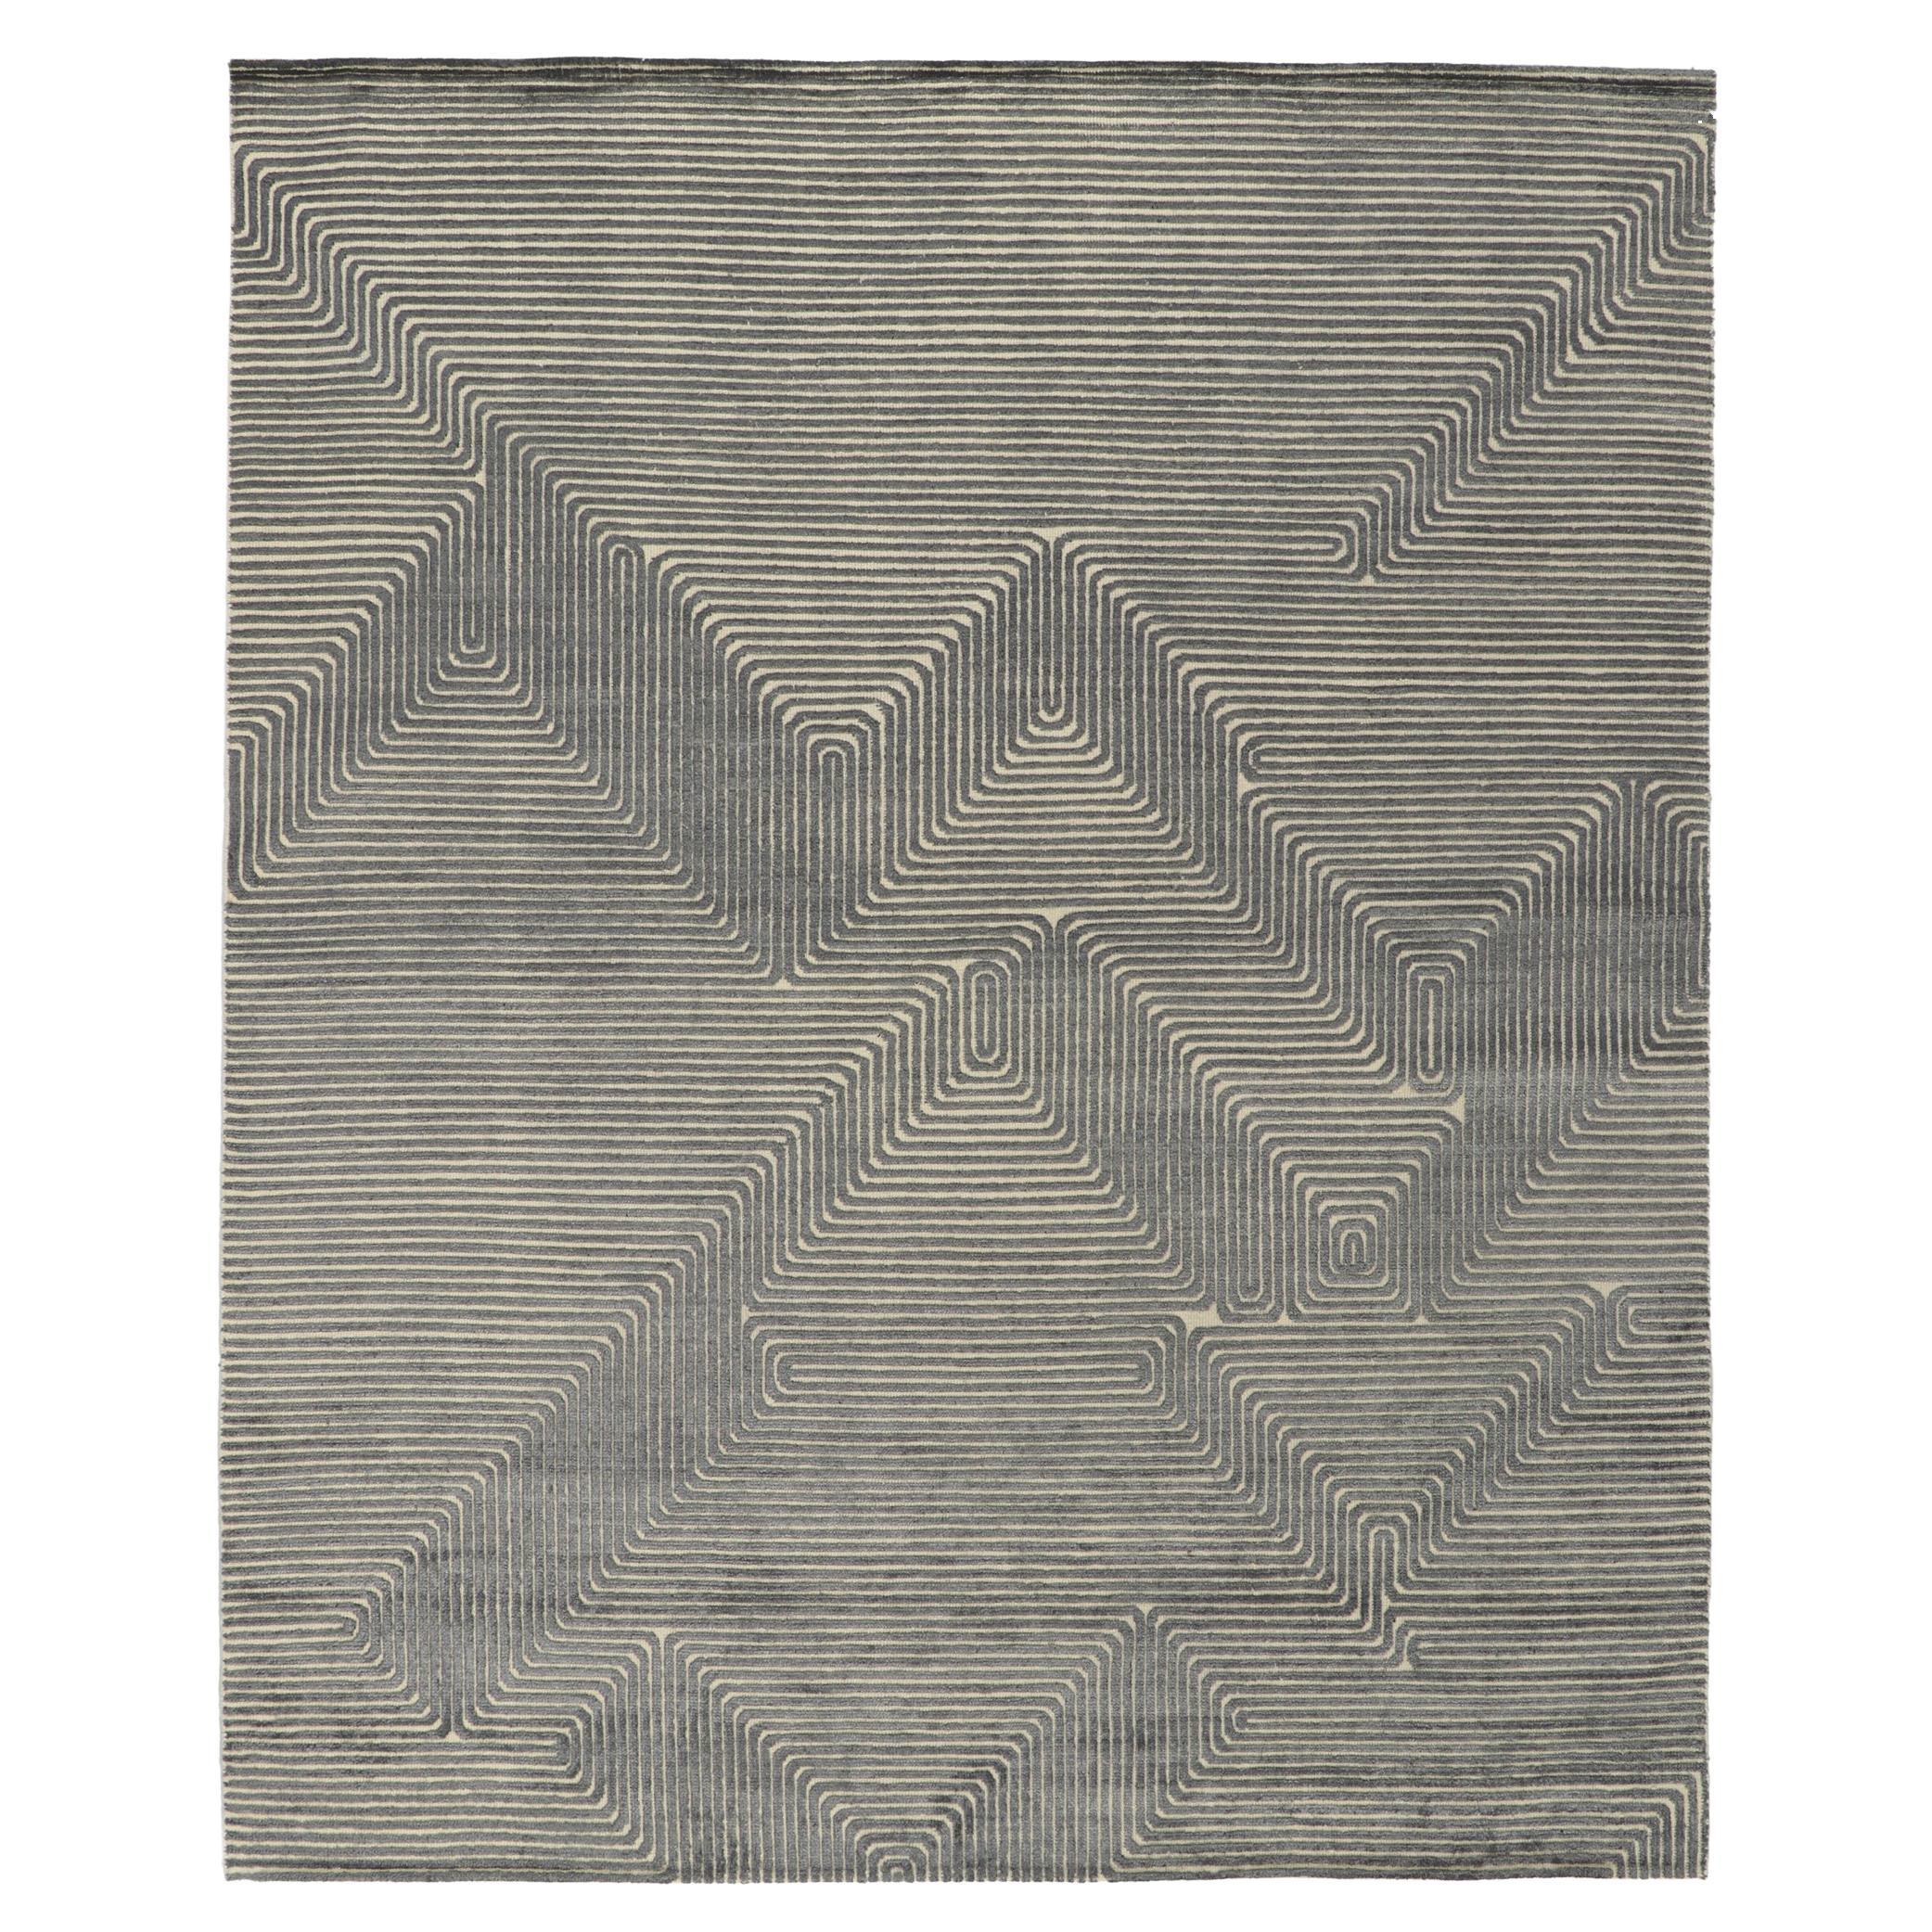 Zeitgenössischer, strukturierter Hochlehner-Teppich, inspiriert von Victor Vasarely